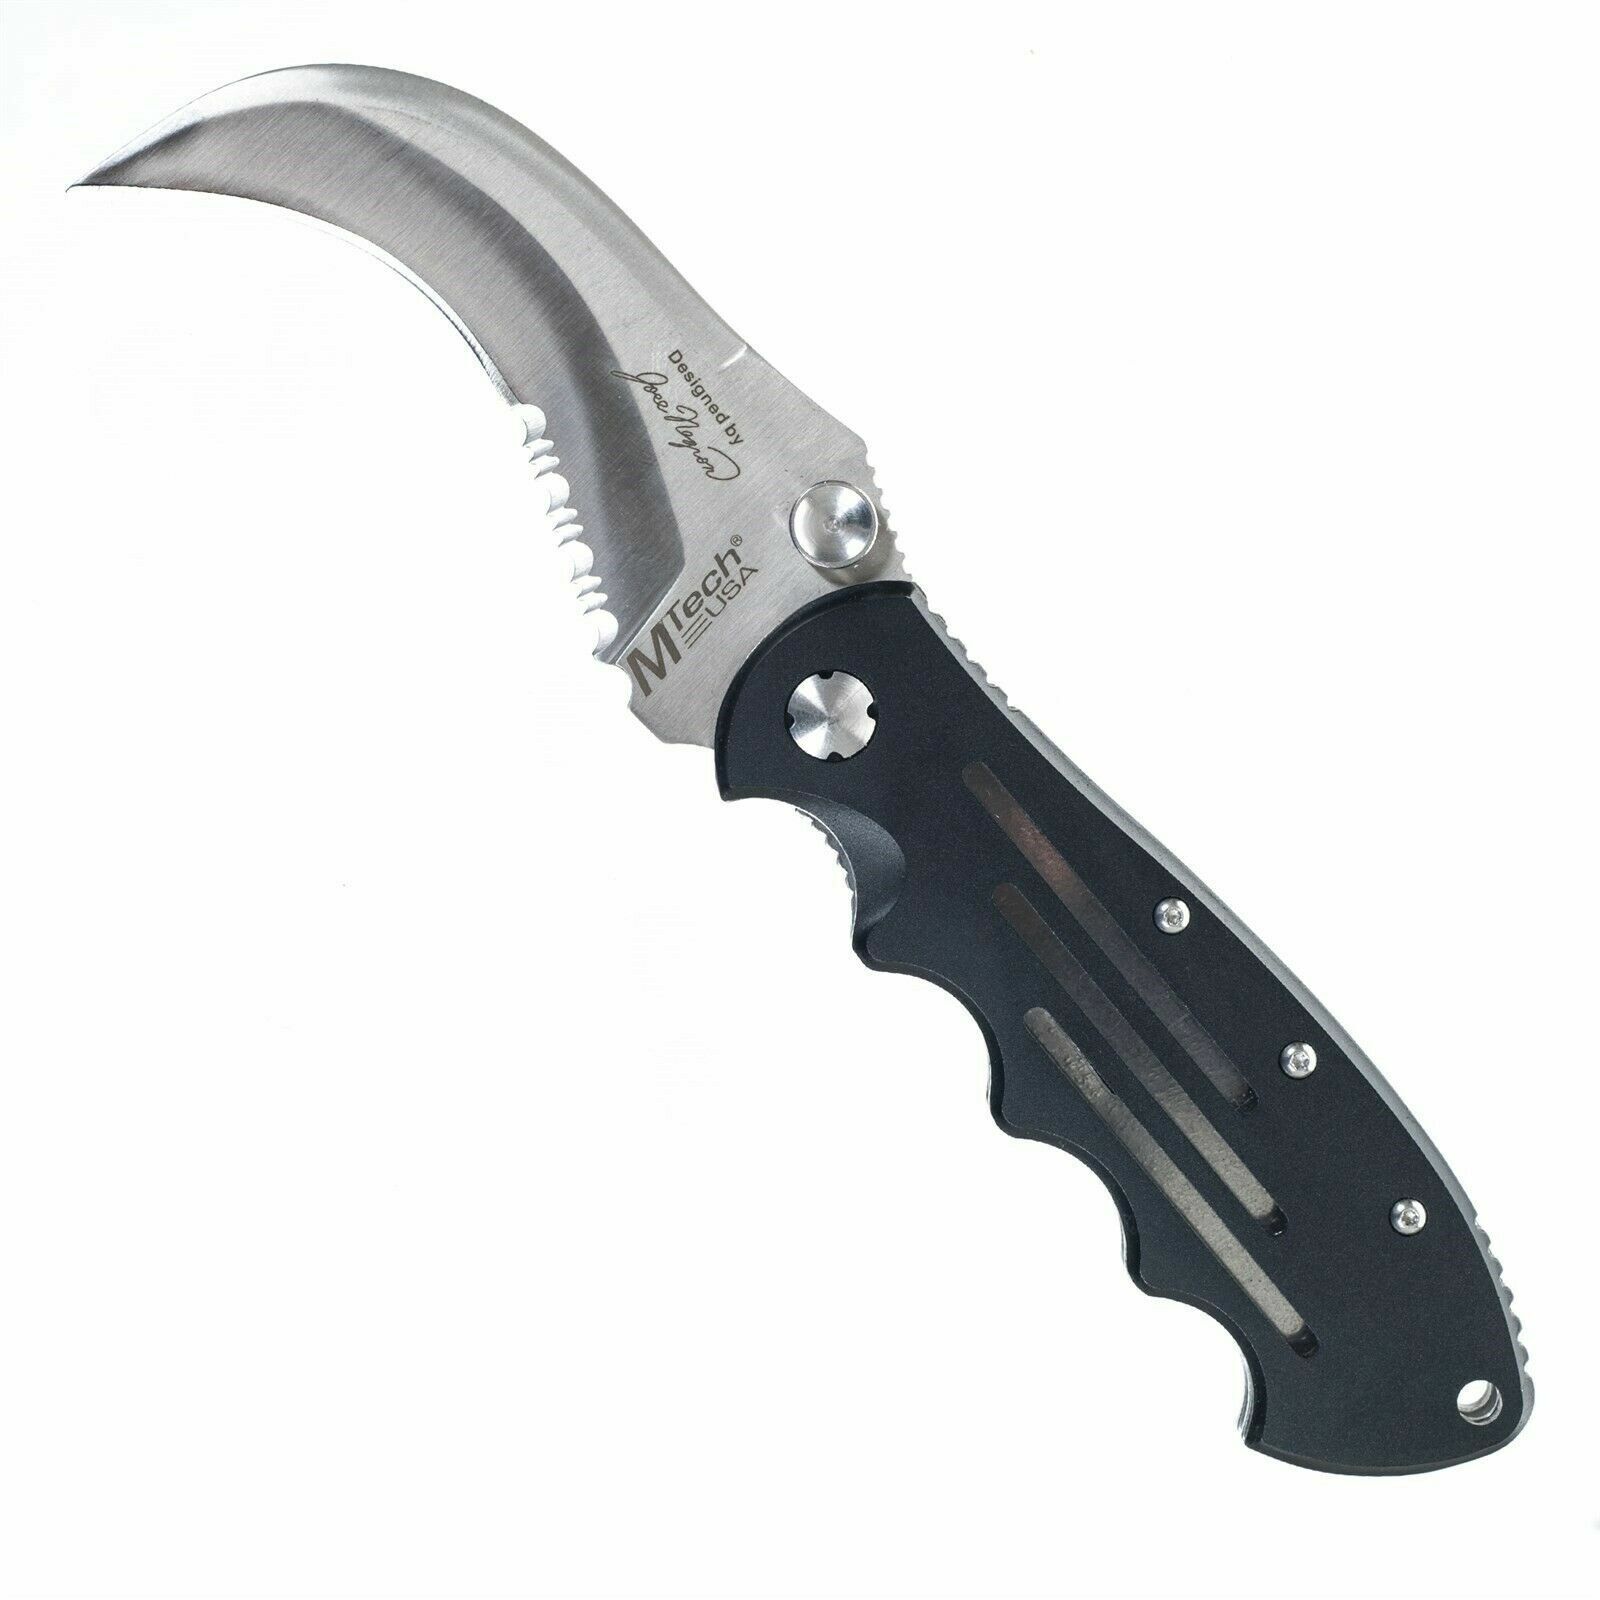 Hawk Bill Blade Stainless Steel Folder Knife 8.75 inch Small Pocket Knife